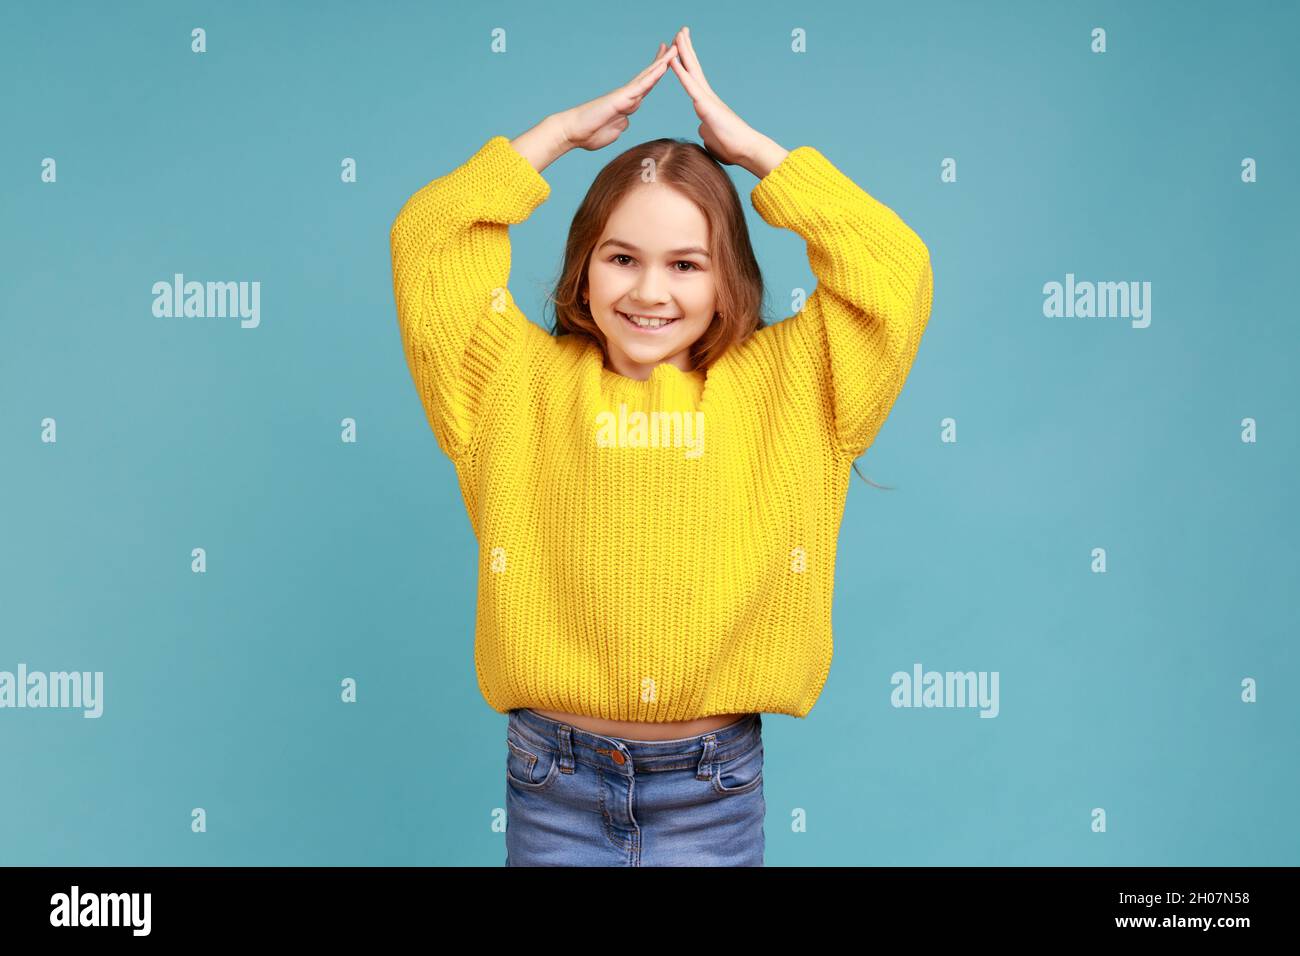 Kleines Mädchen tut Hausdach Geste mit den Händen über den Kopf und lachen, Kinderbetreuung und Schutz, tragen gelben lässigen Stil Pullover. Innenaufnahme des Studios isoliert auf blauem Hintergrund. Stockfoto